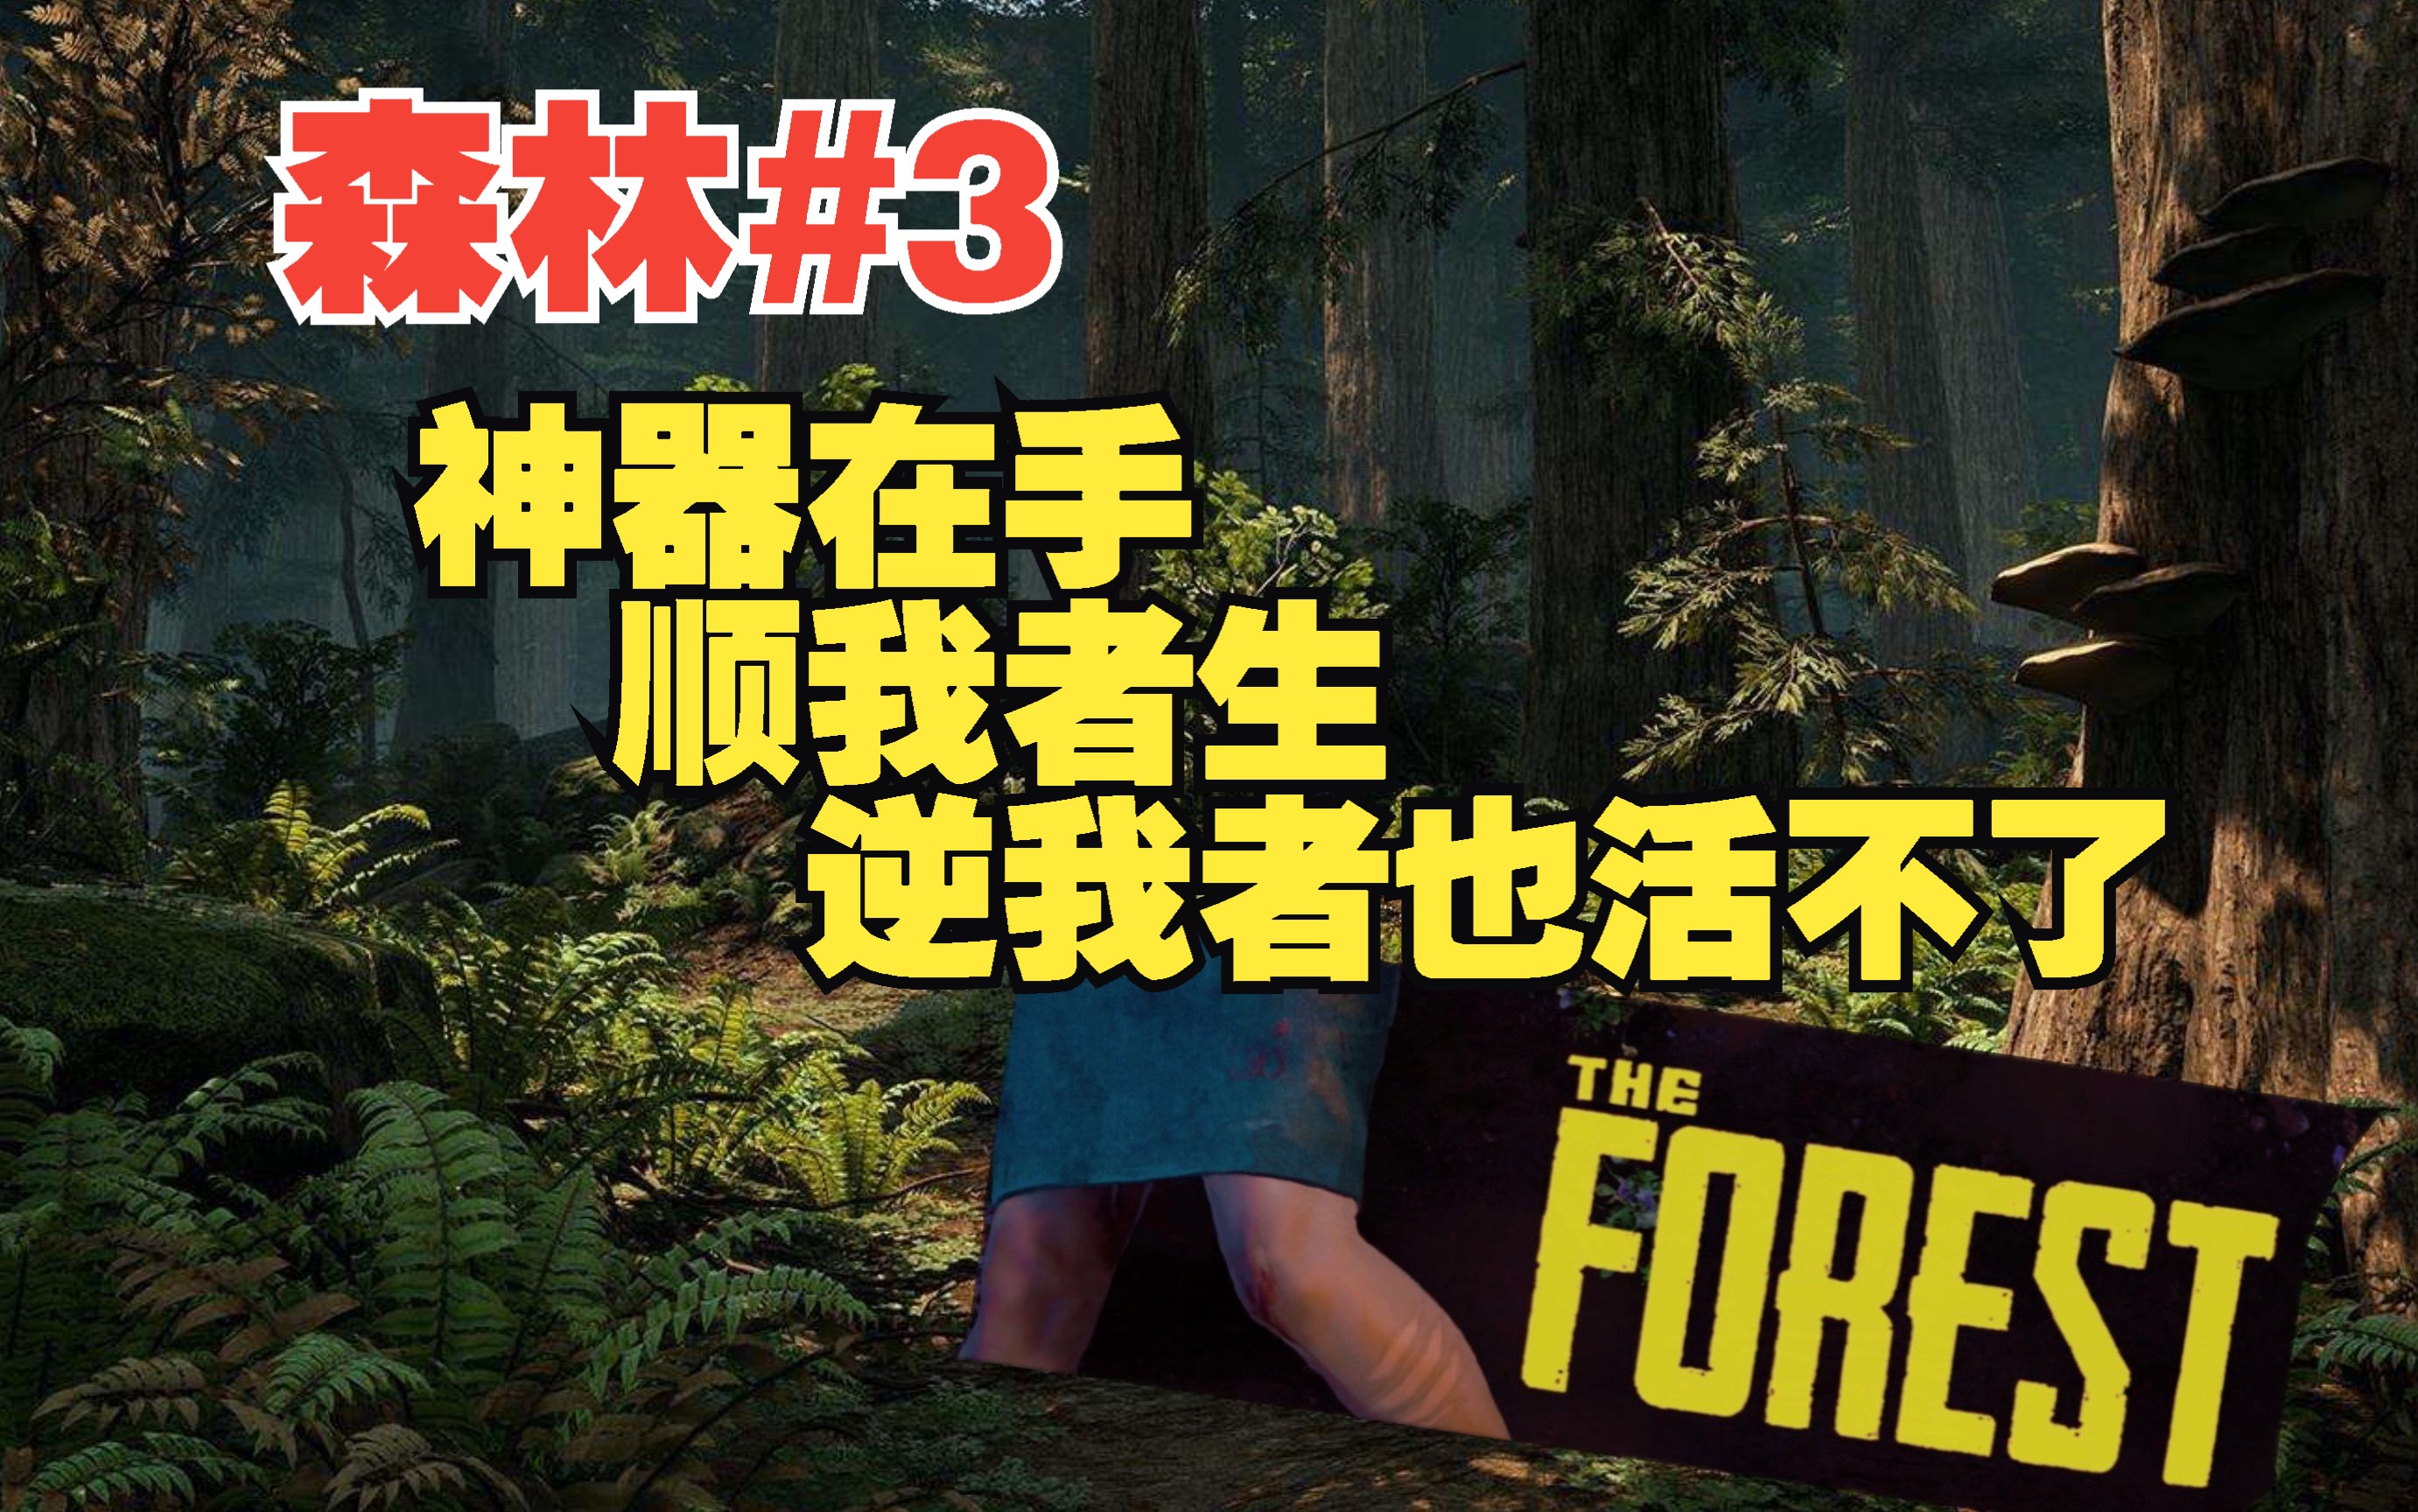 《森林》the forest 游戏实况解说3p:德州来的大电锯!杀!